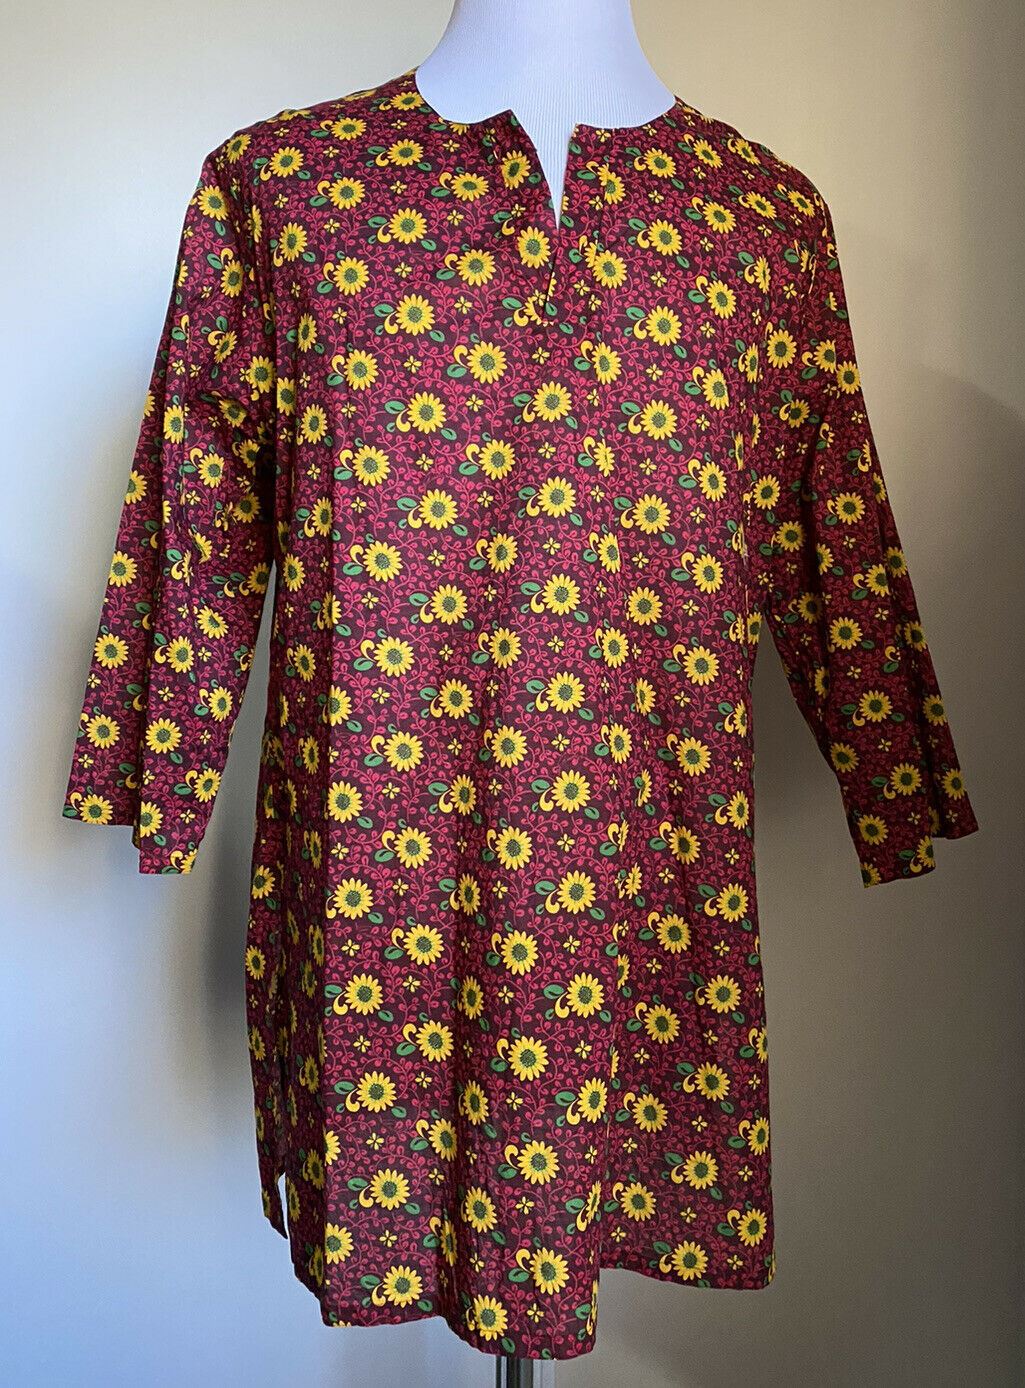 Новая рубашка Gucci Sunflower on Mublin, желтый/красный, размер L (50 евро), Италия